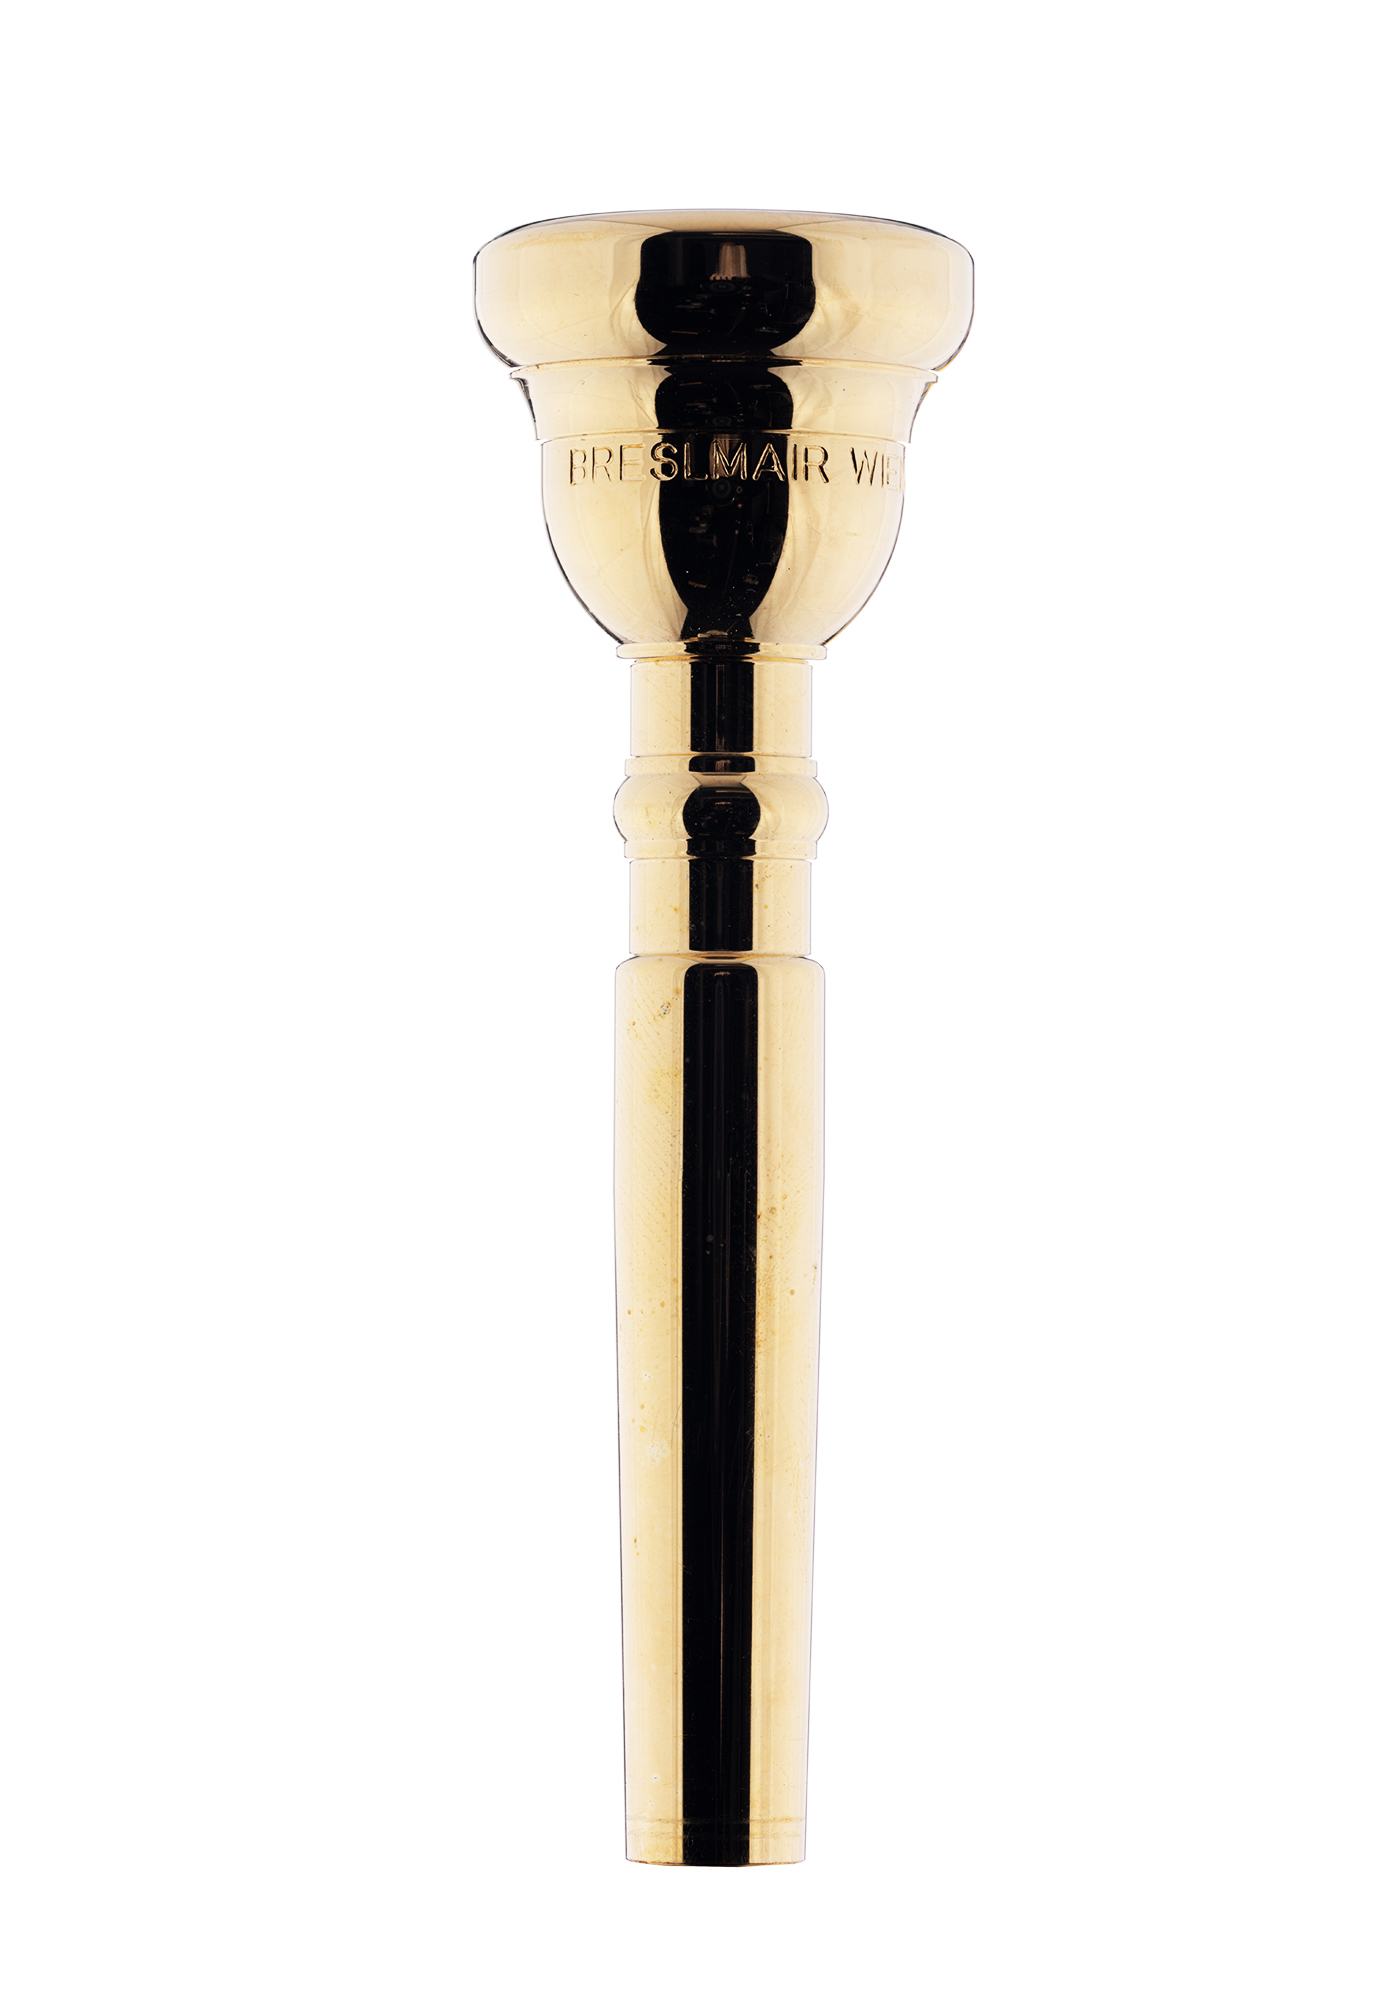 Breslmair Trumpet Mouthpiece G1 gold plated